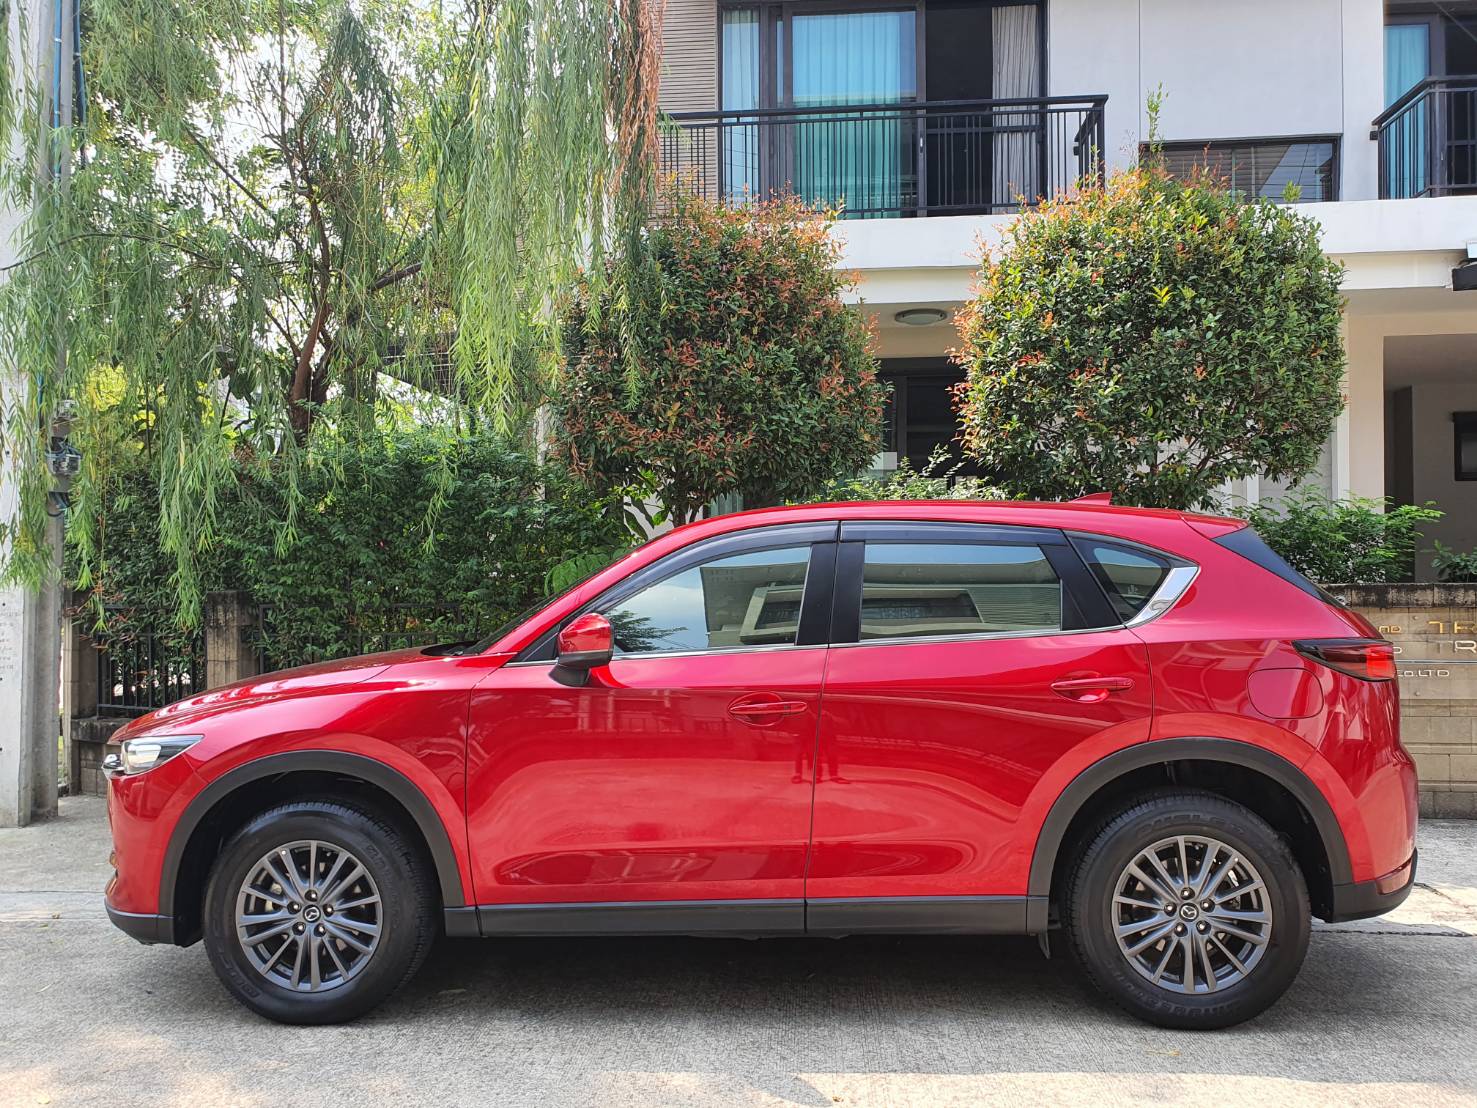 Mazda CX5 2.0C สีแดง ปี 2019 แท้ Auto มือหนึ่ง วิ่งน้อย ไม่เคยทำสี